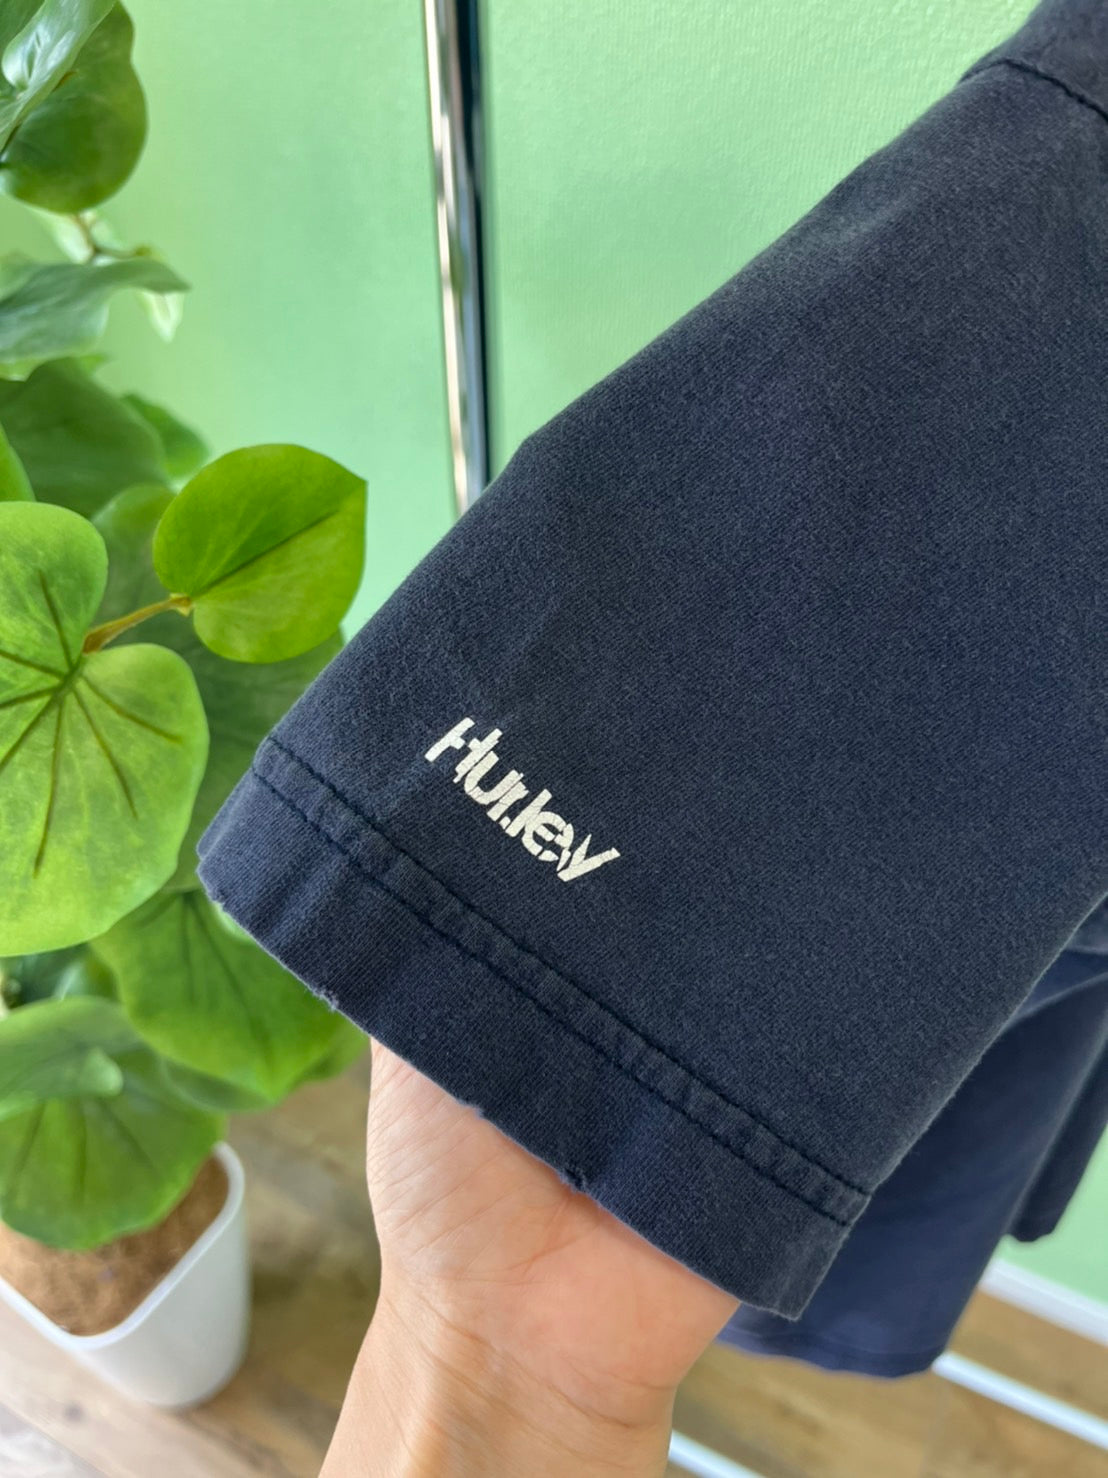 【HURLEY】00's HURLEY Y2K navy Vintage T-Shirt  （men's M)